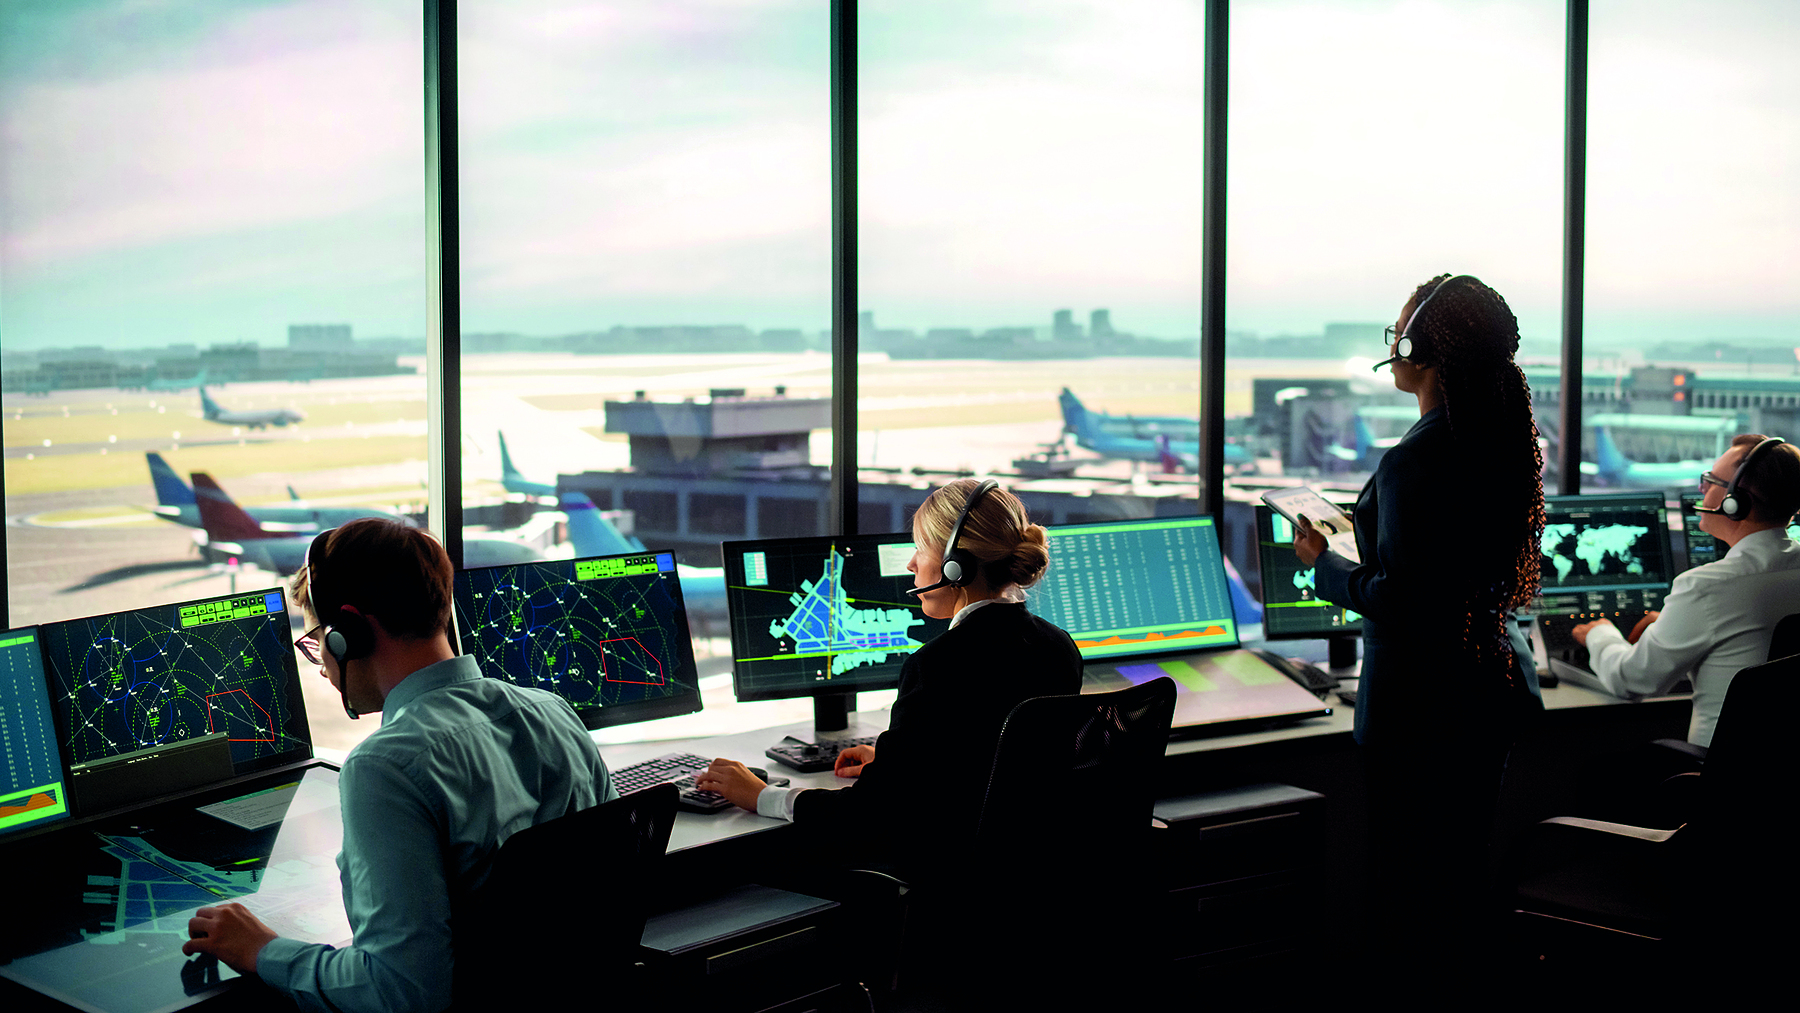 Fotografia. Vista parcial de um torre de controle aéreo. Algumas pessoas estão sentadas à frente de monitores com informações na tela. Ao fundo, pista de pouso e aviões.